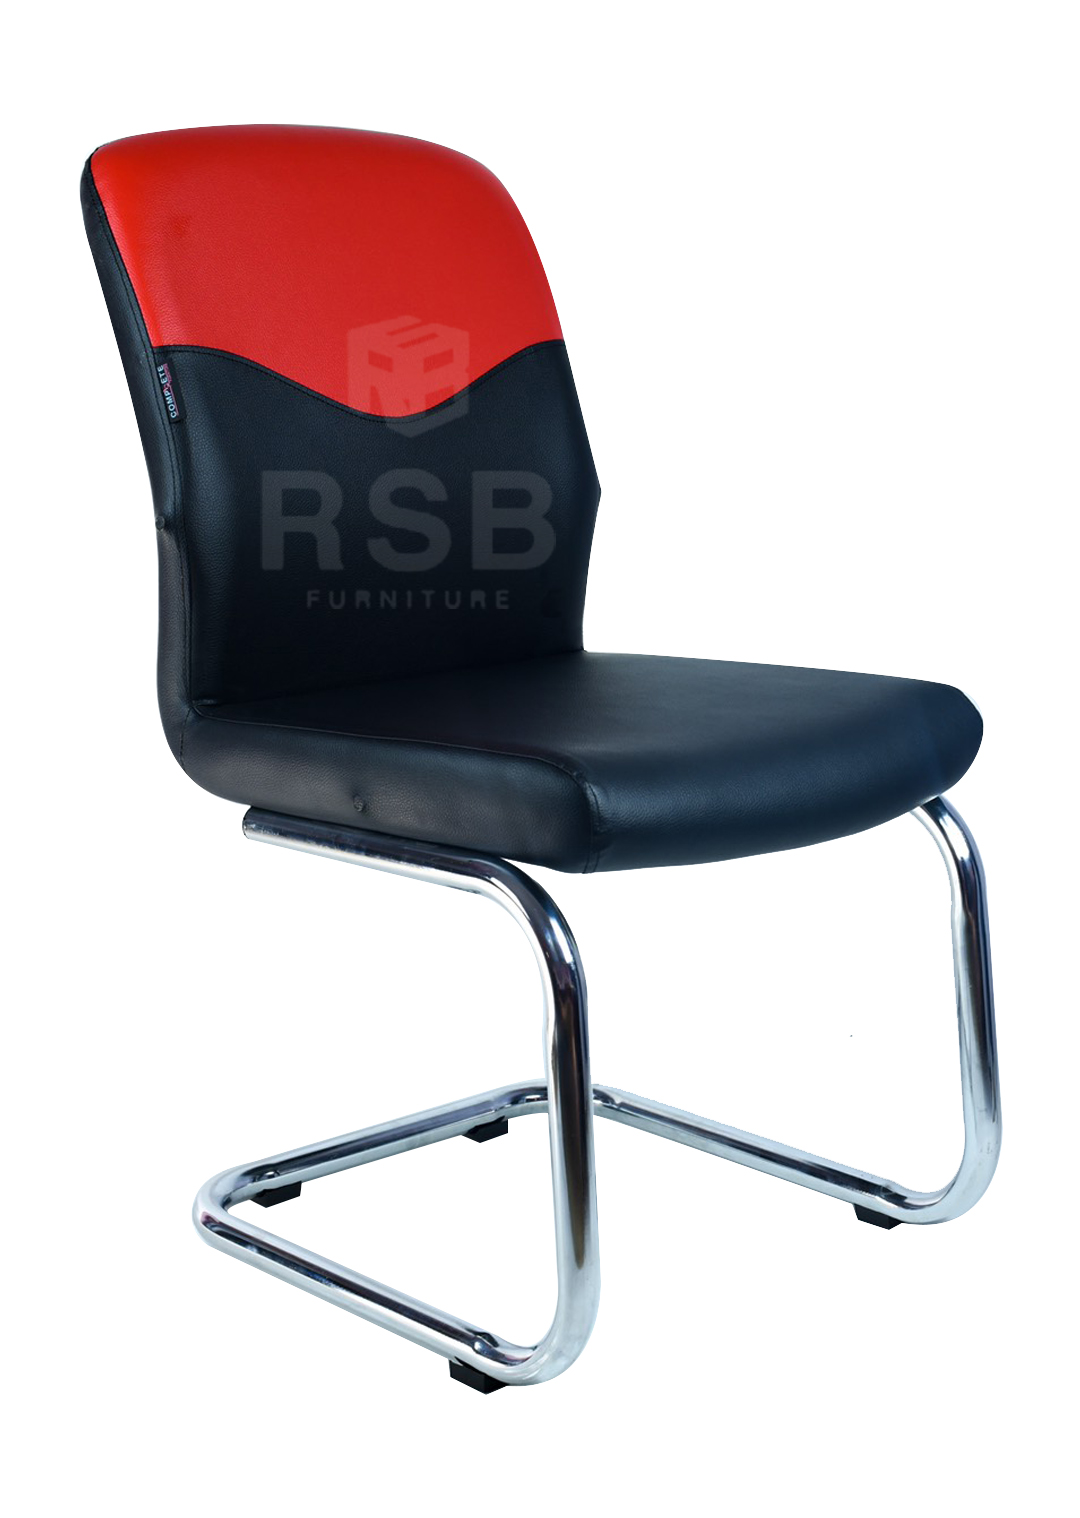 เก้าอี้สำนักงาน ขาเหล็กเงา ตัว C สามารถเปลี่ยนสีหนังได้ รหัส 3010